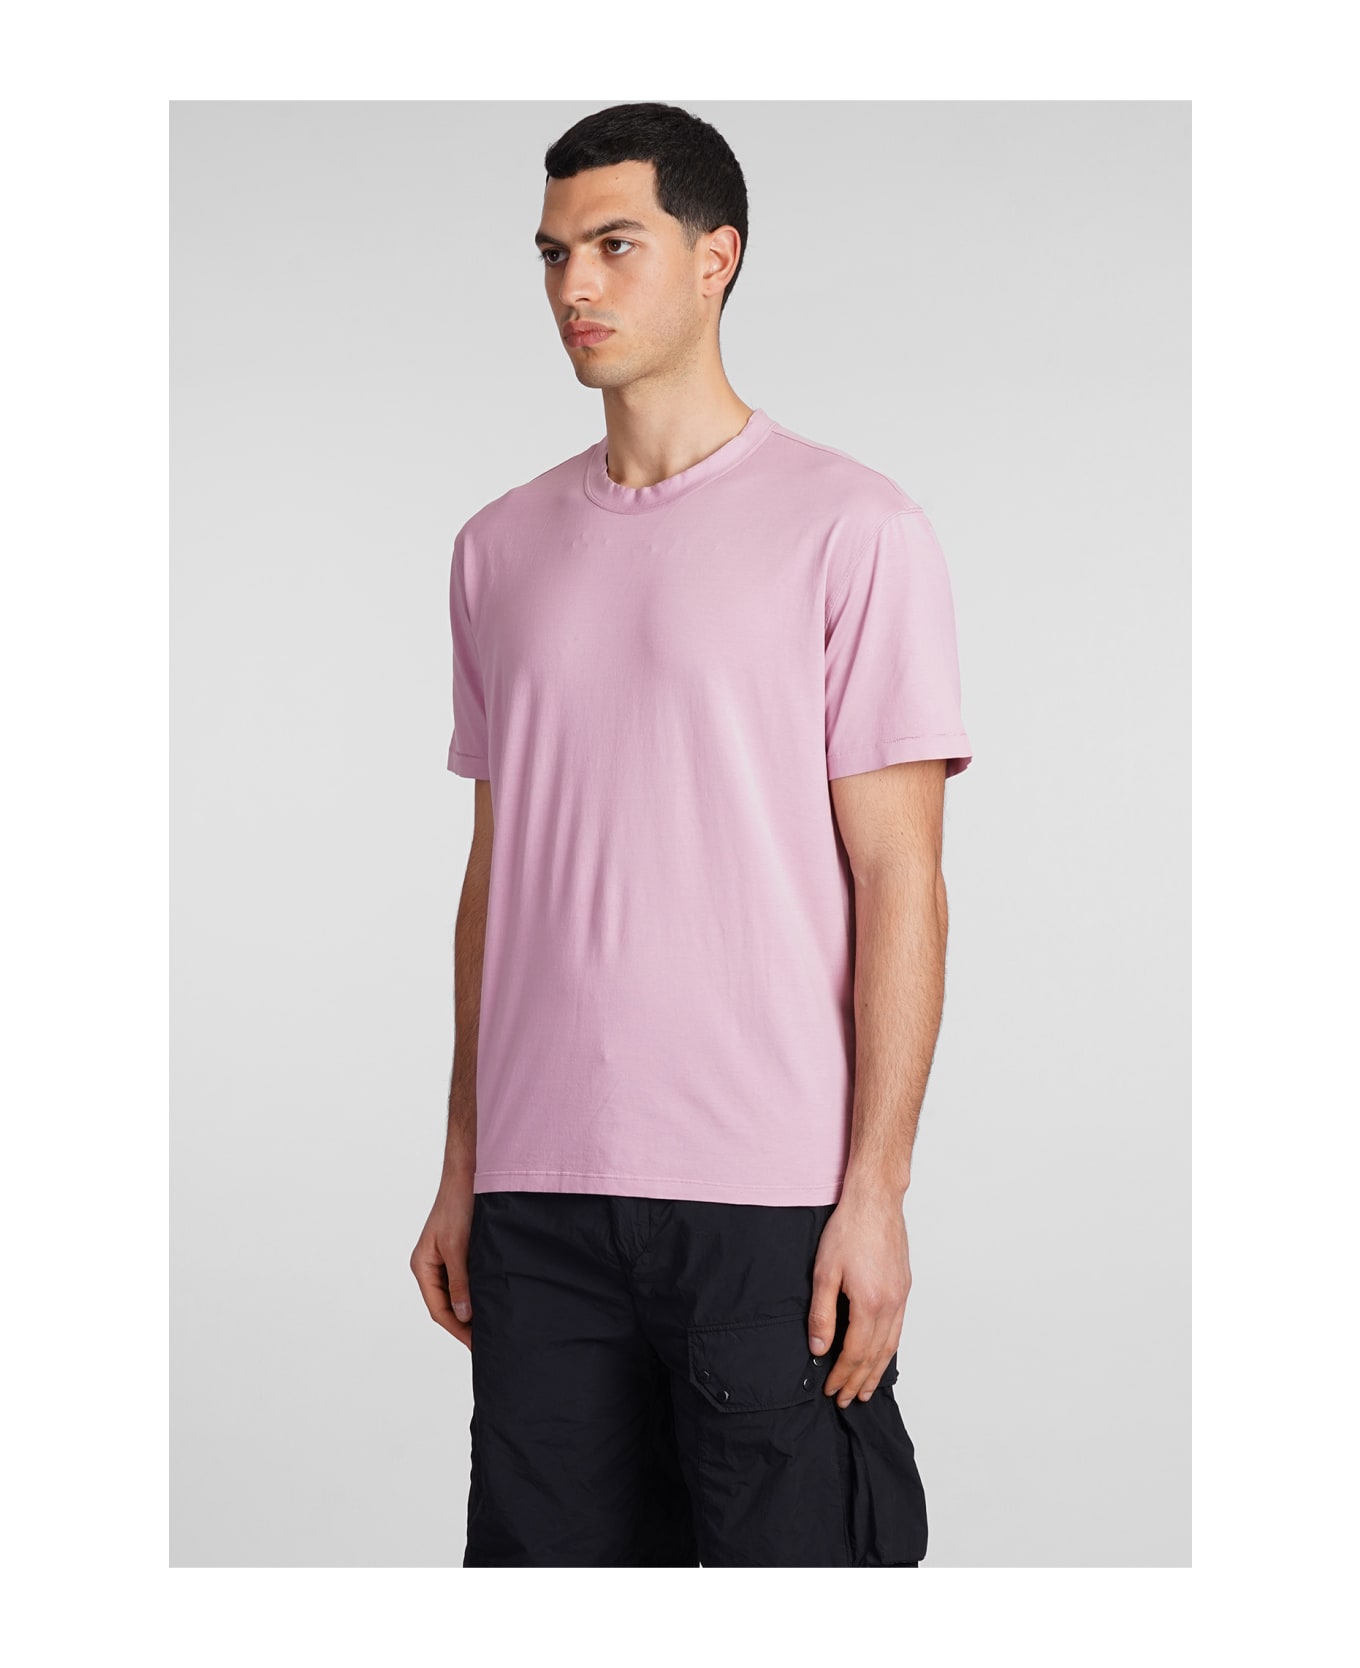 Ten C T-shirt In Rose-pink Cotton - rose-pink